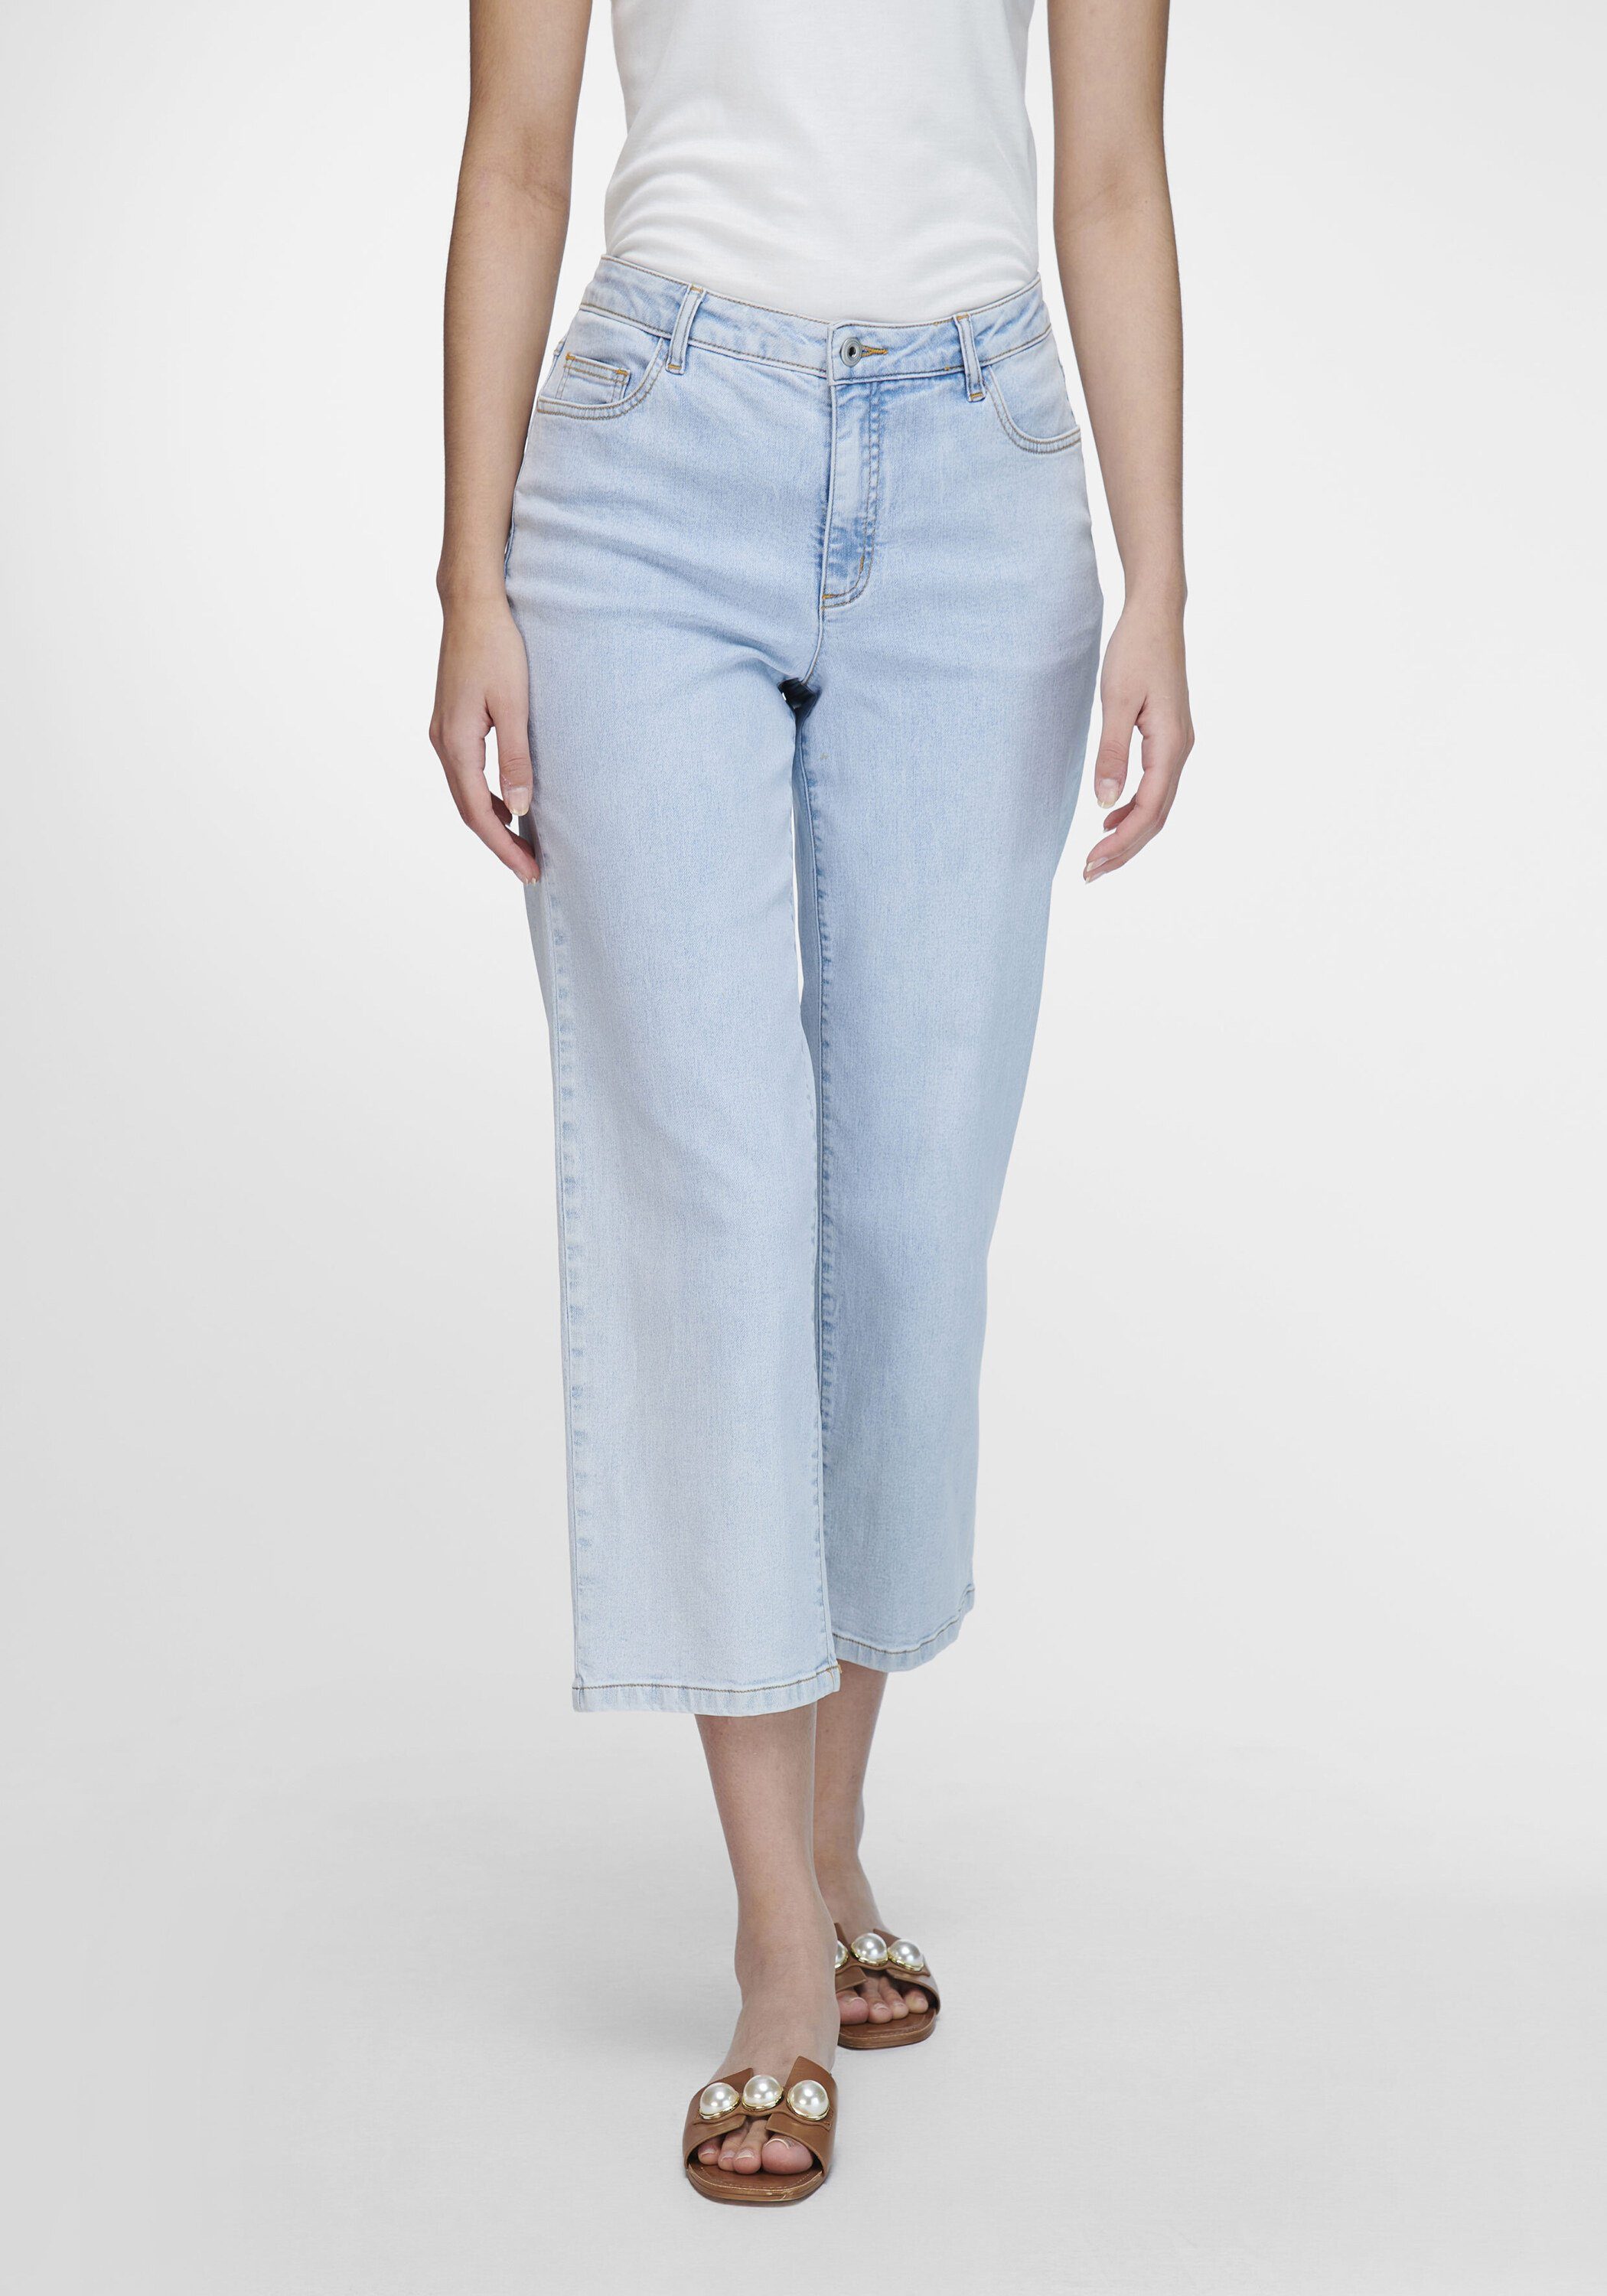 Lay Slim-fit-Jeans cotton Emilia